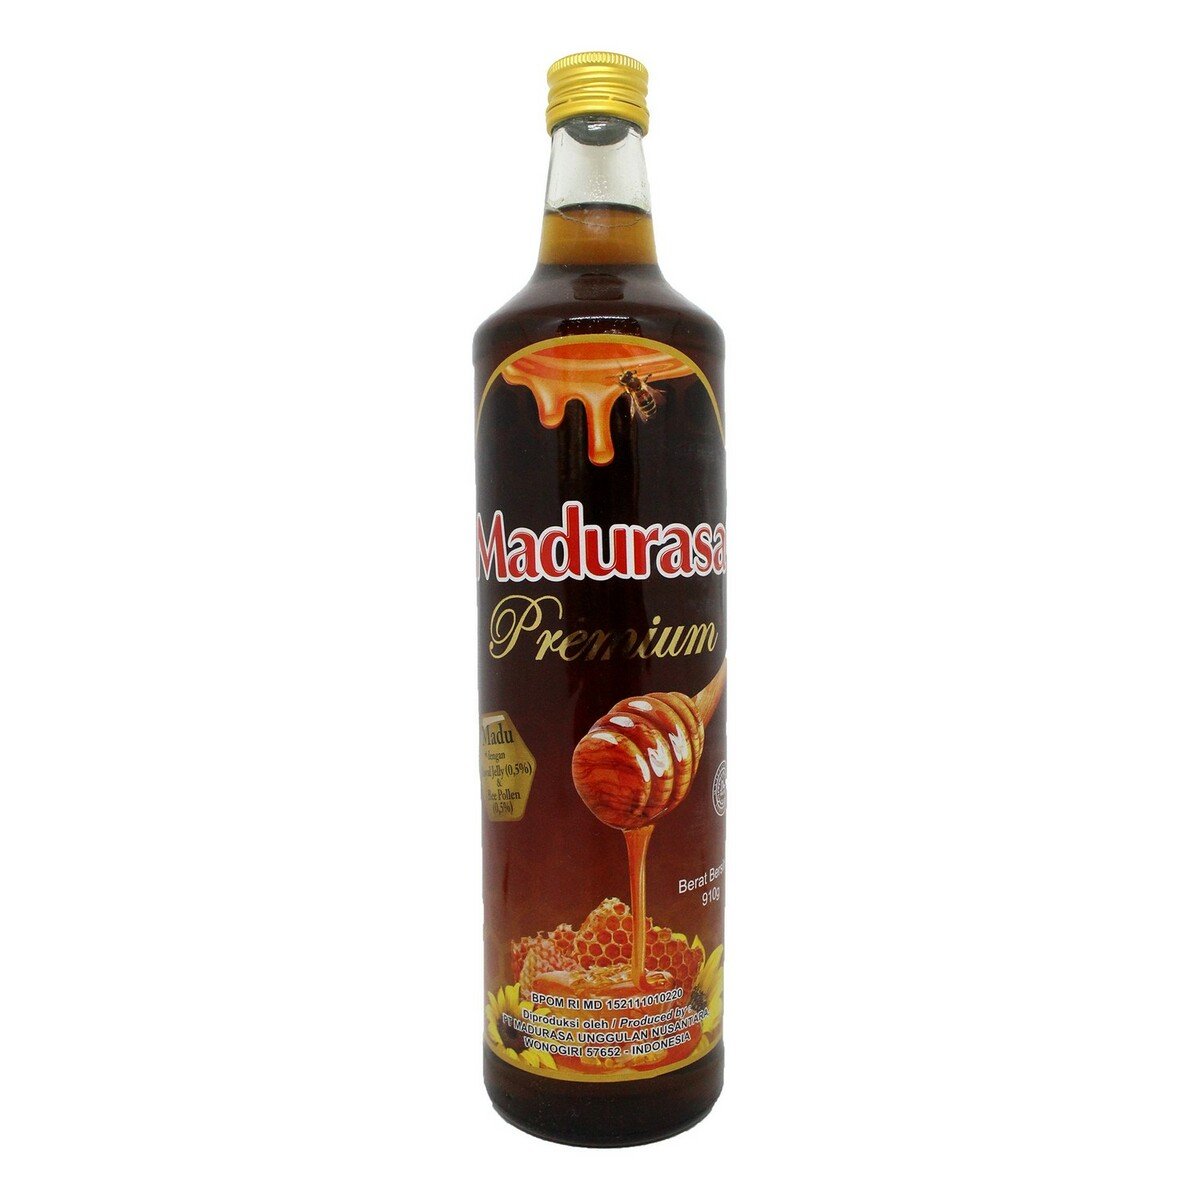 Madurasa Honey Premium 910g